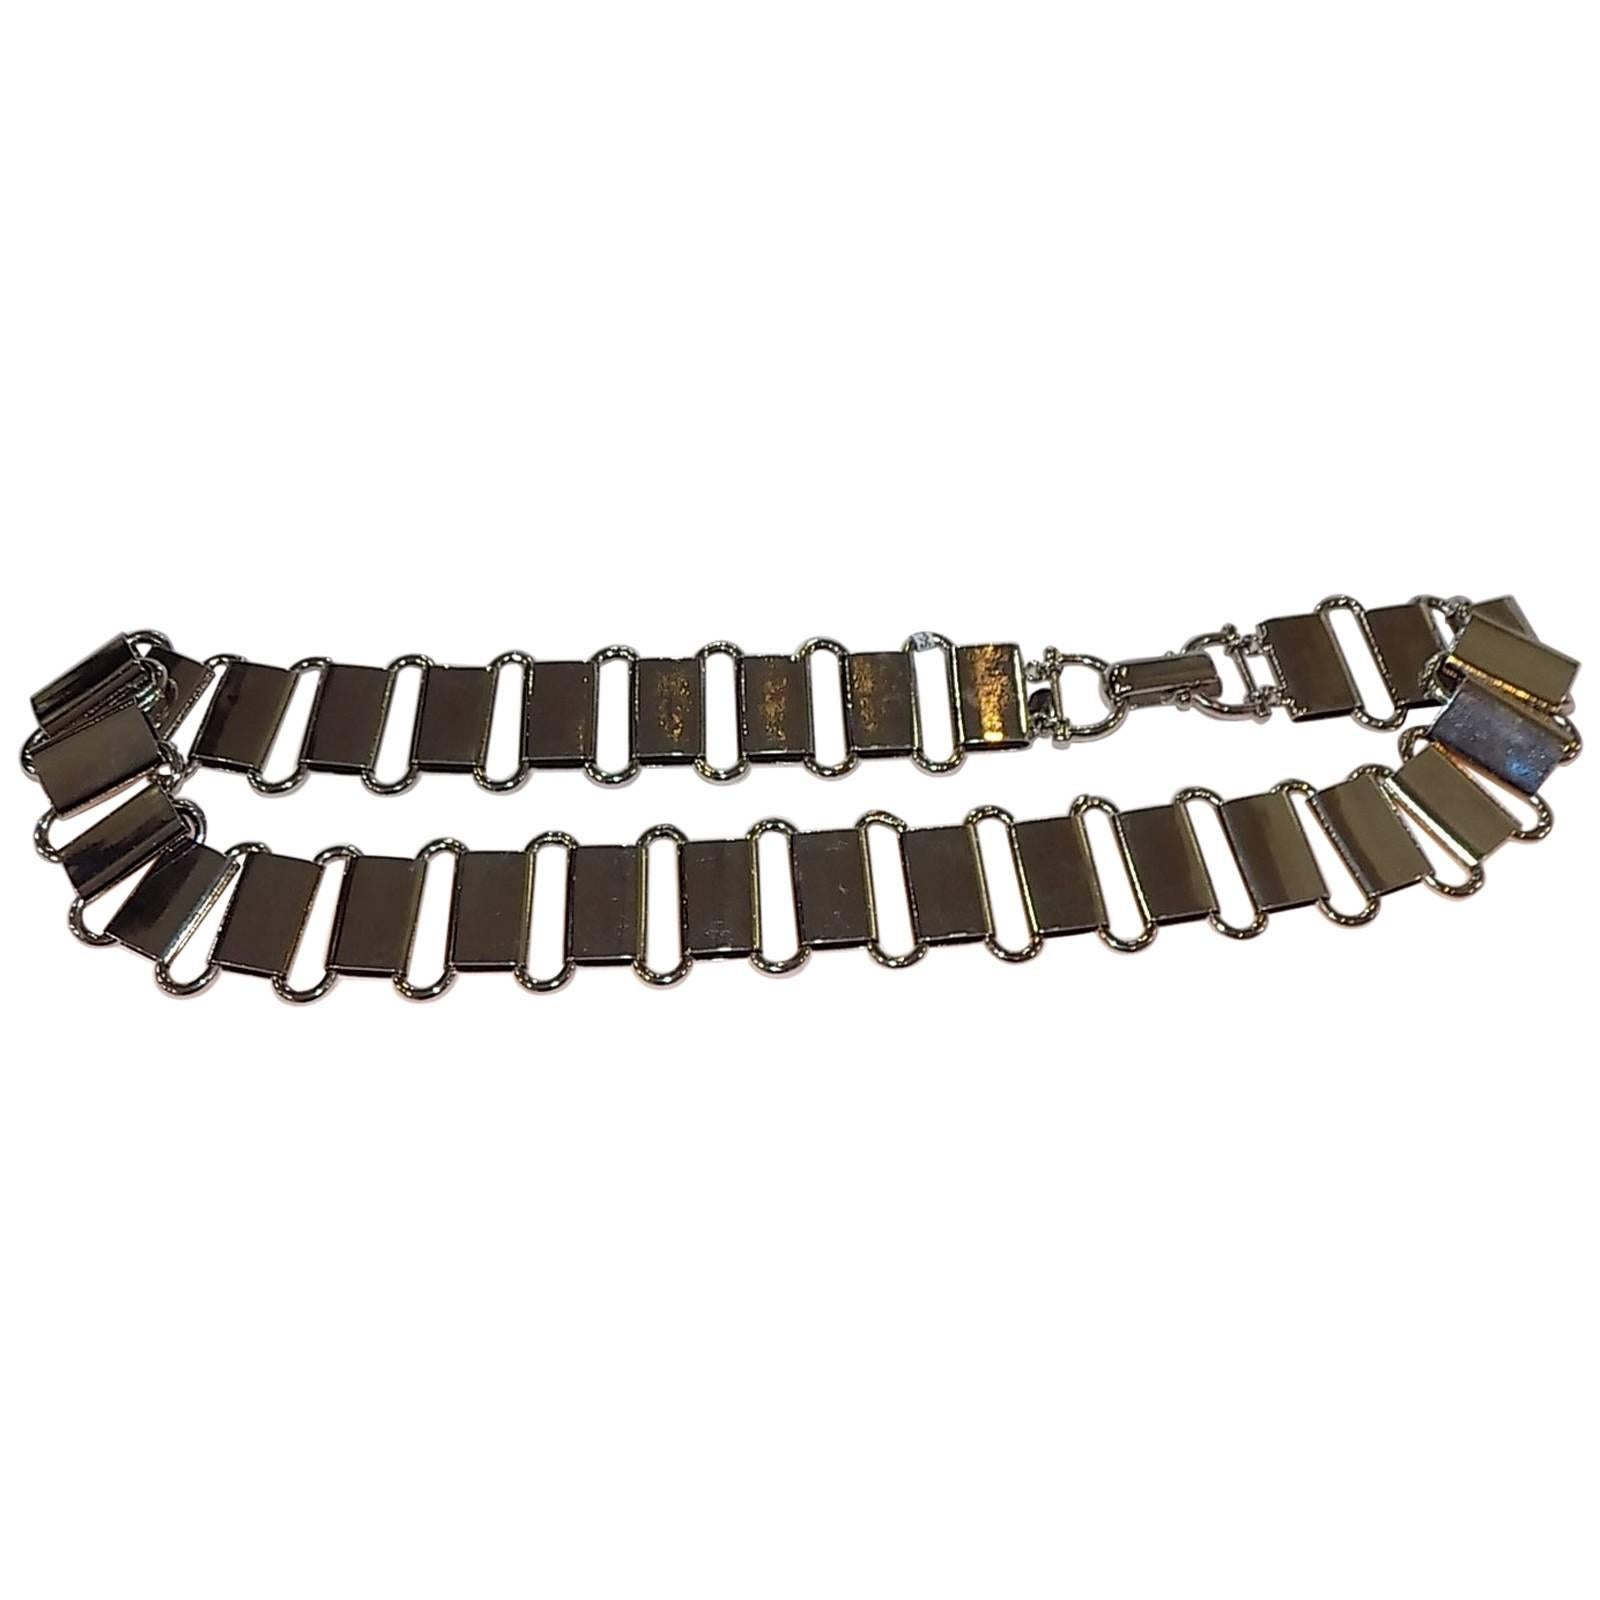 Paco Rabanne Vintage siver links metal belt For Sale